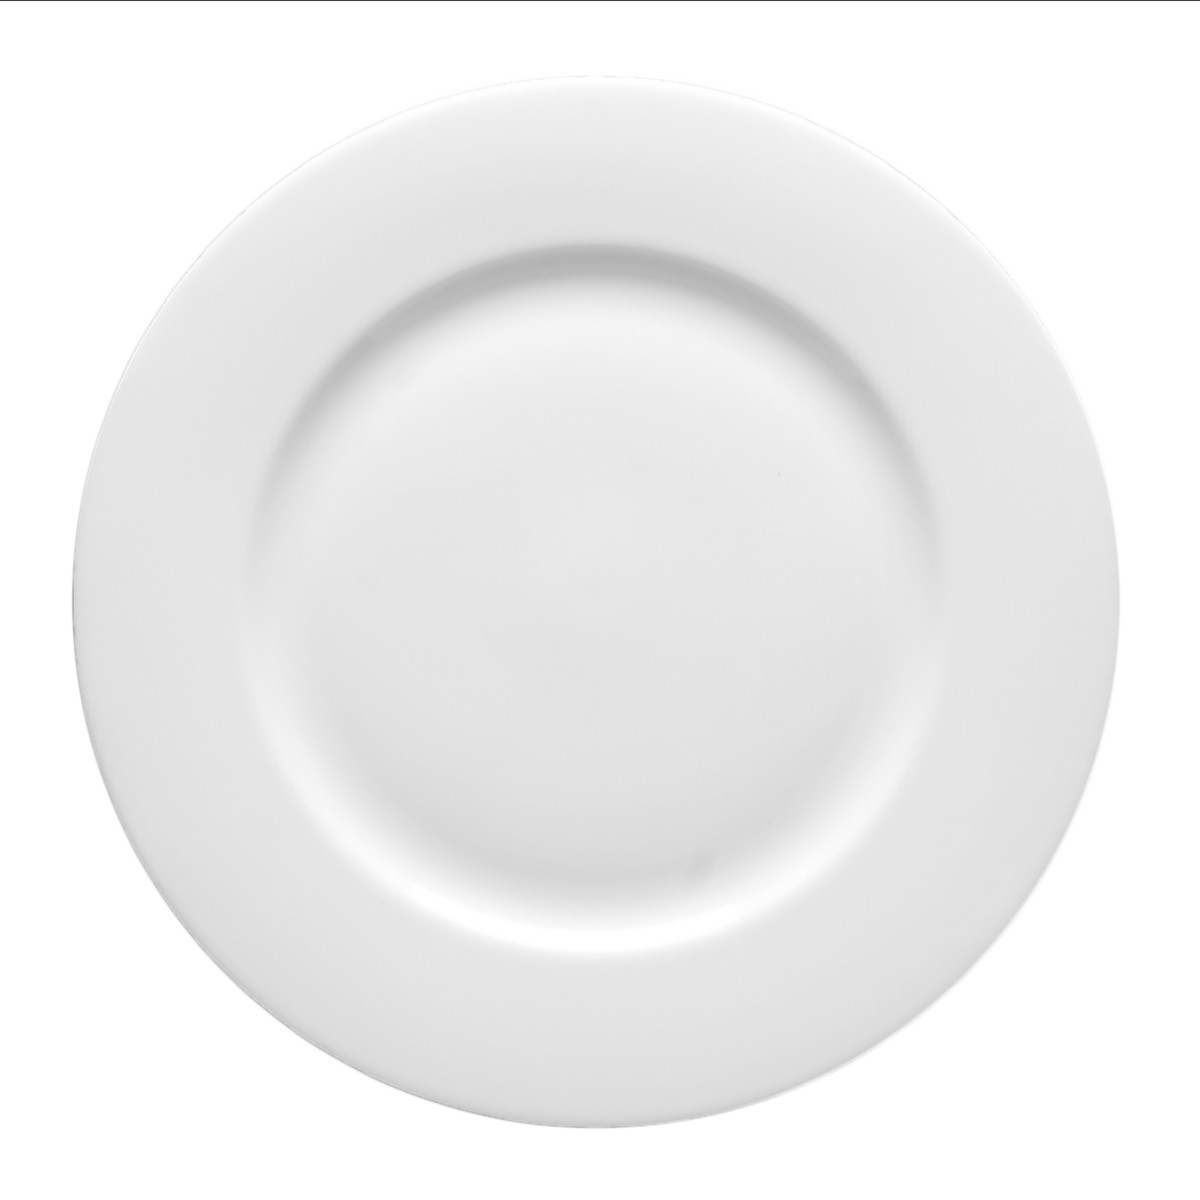 Taura Dinner Plate 11.4"